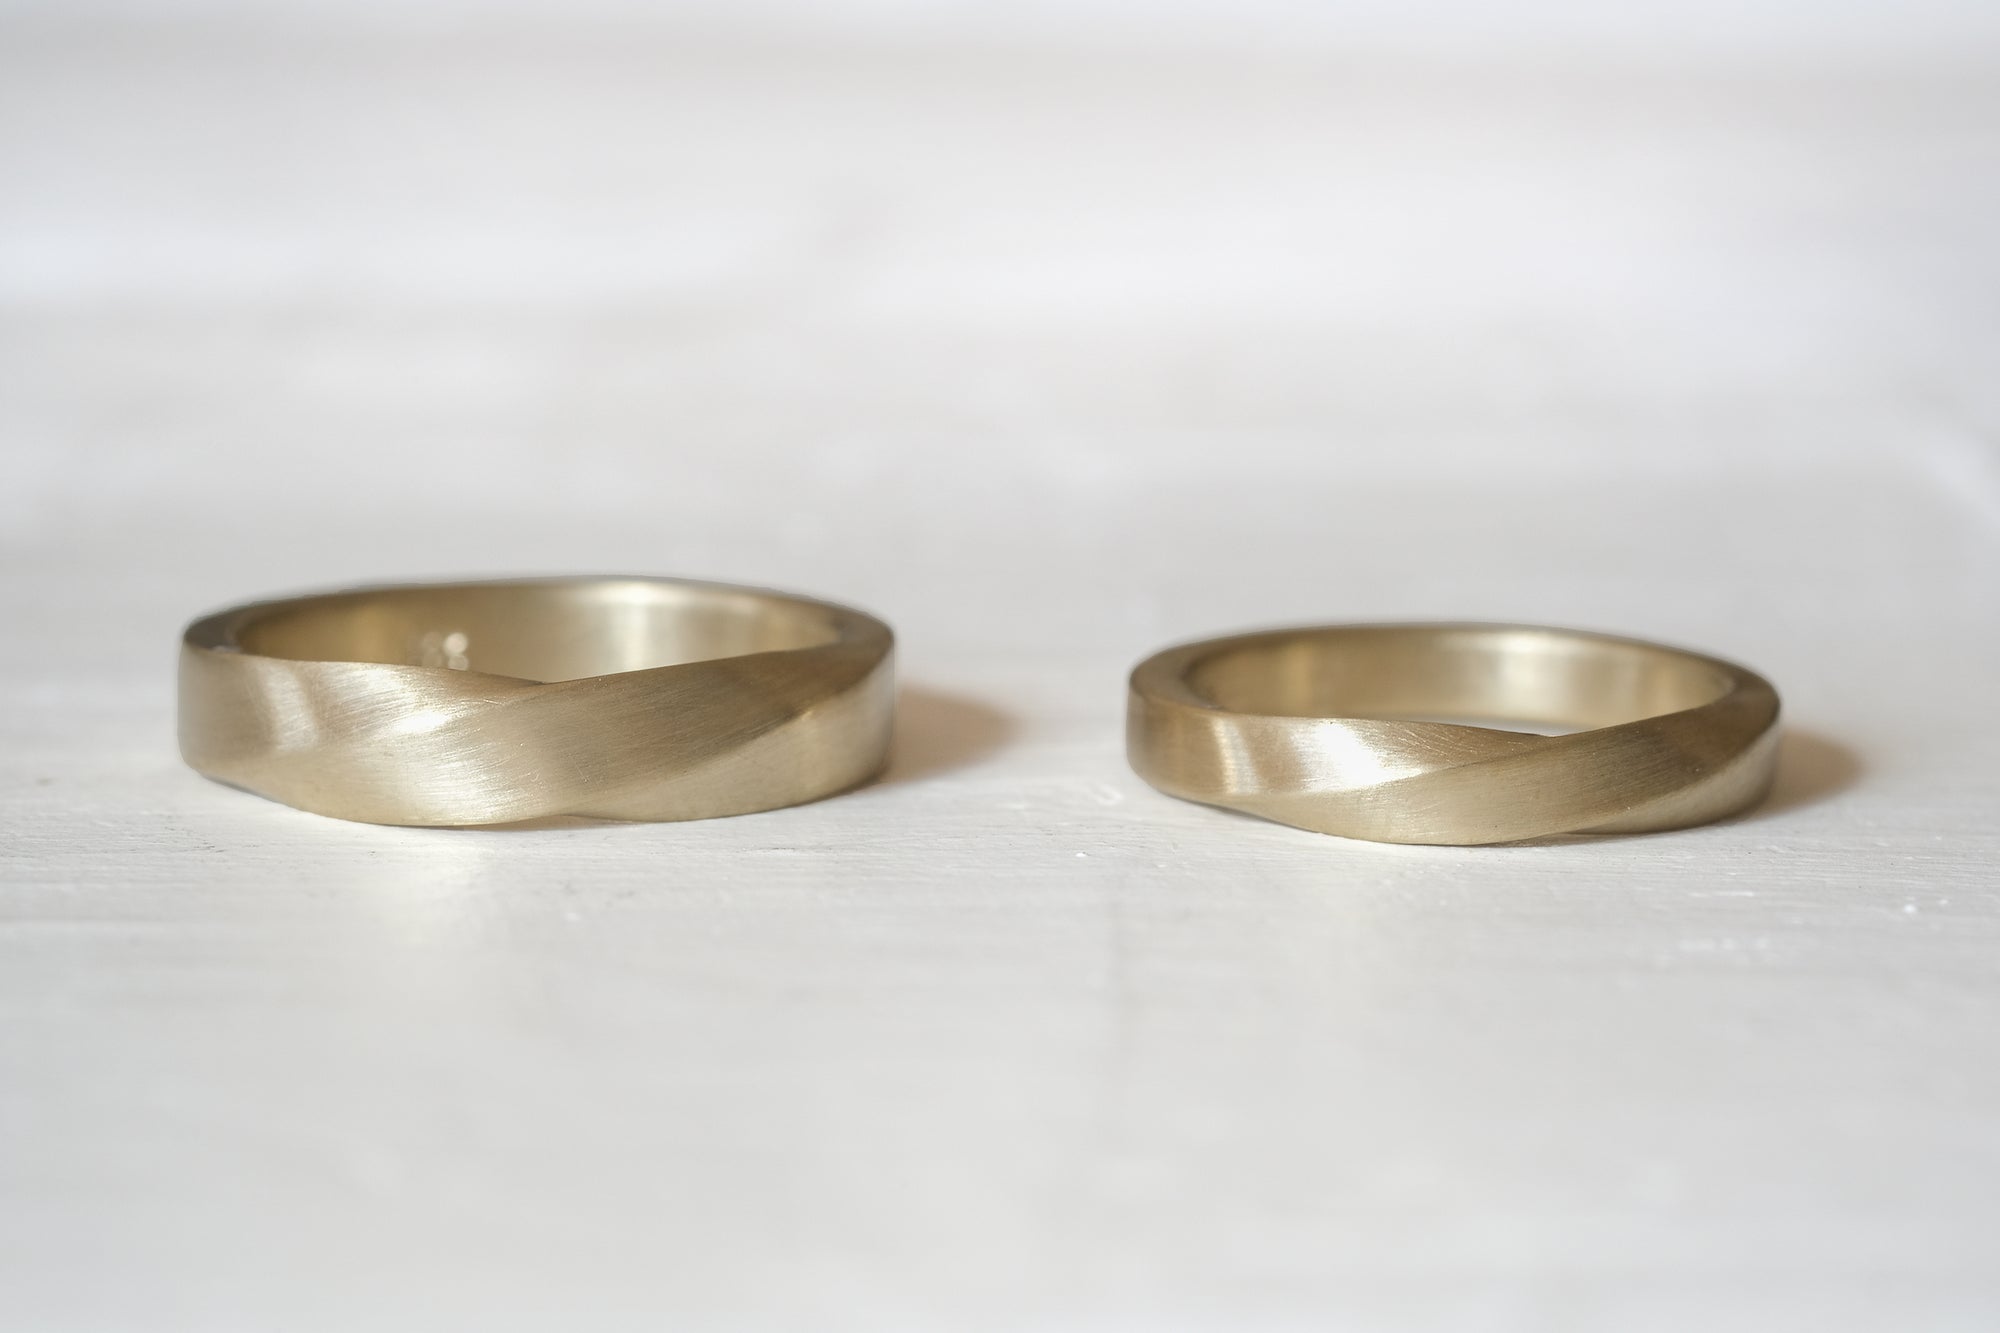 טבעת נישואין זהב עיצוב מוביוס 4 מ"מ בגימור מט